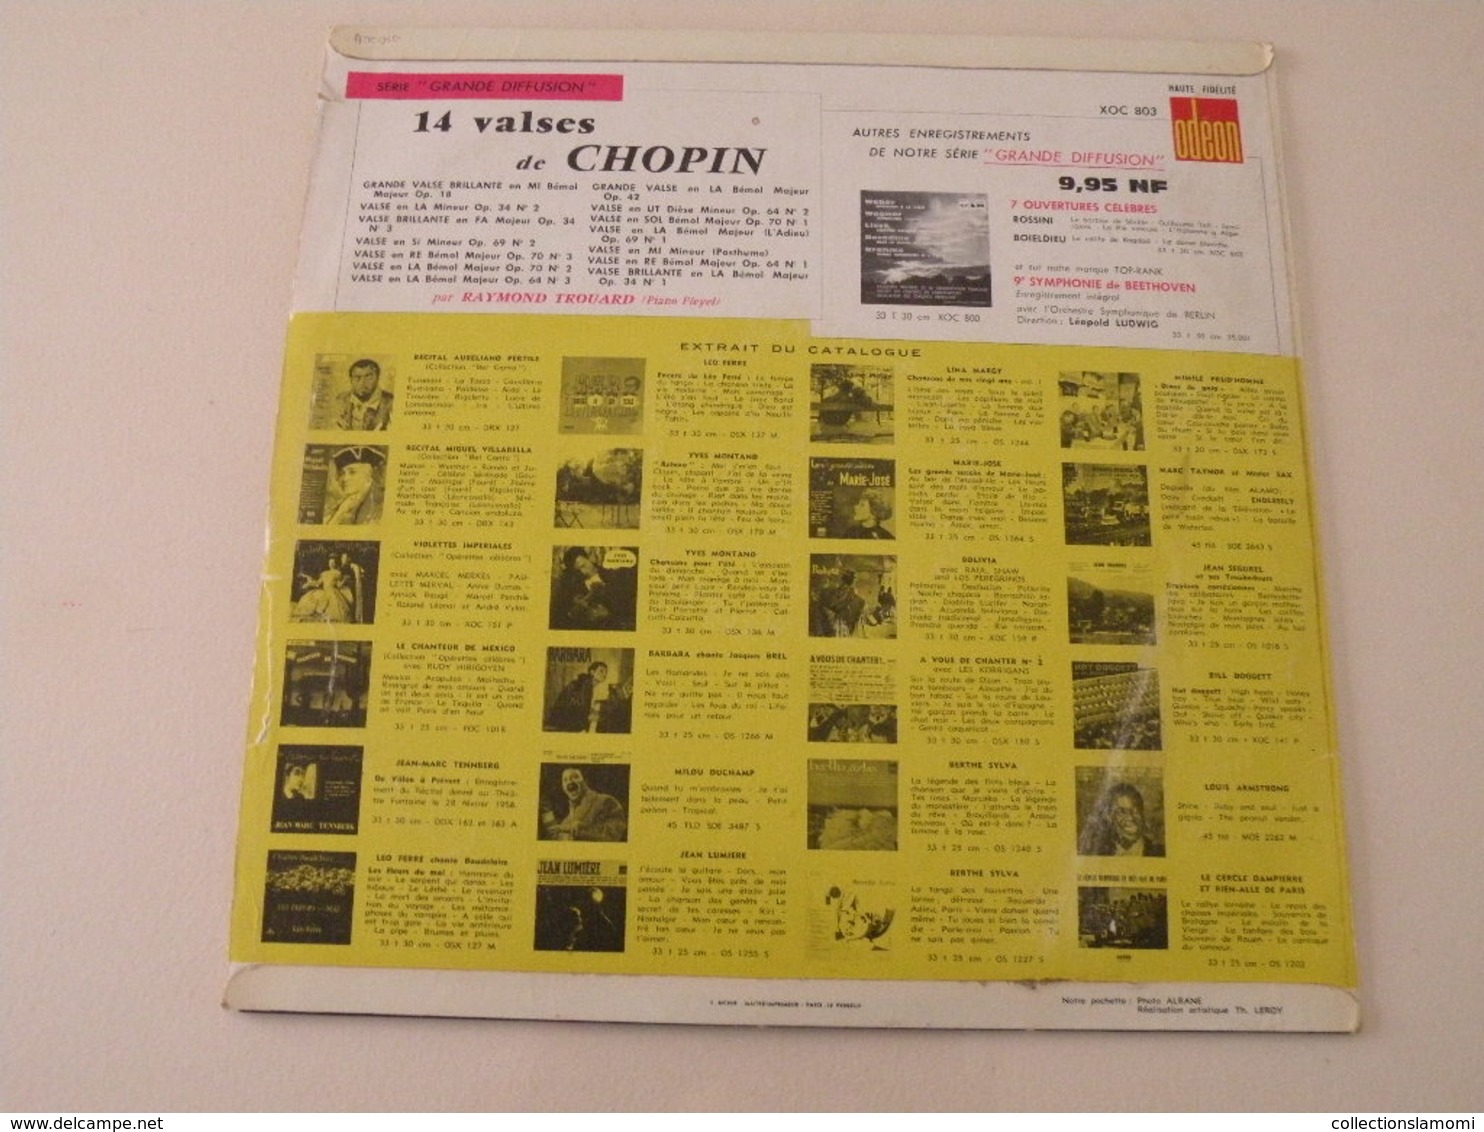 Chopin, 14 Valses Par Raymond Trouard - (Titres Sur Photos) - Vinyle 33 T LP - Classical